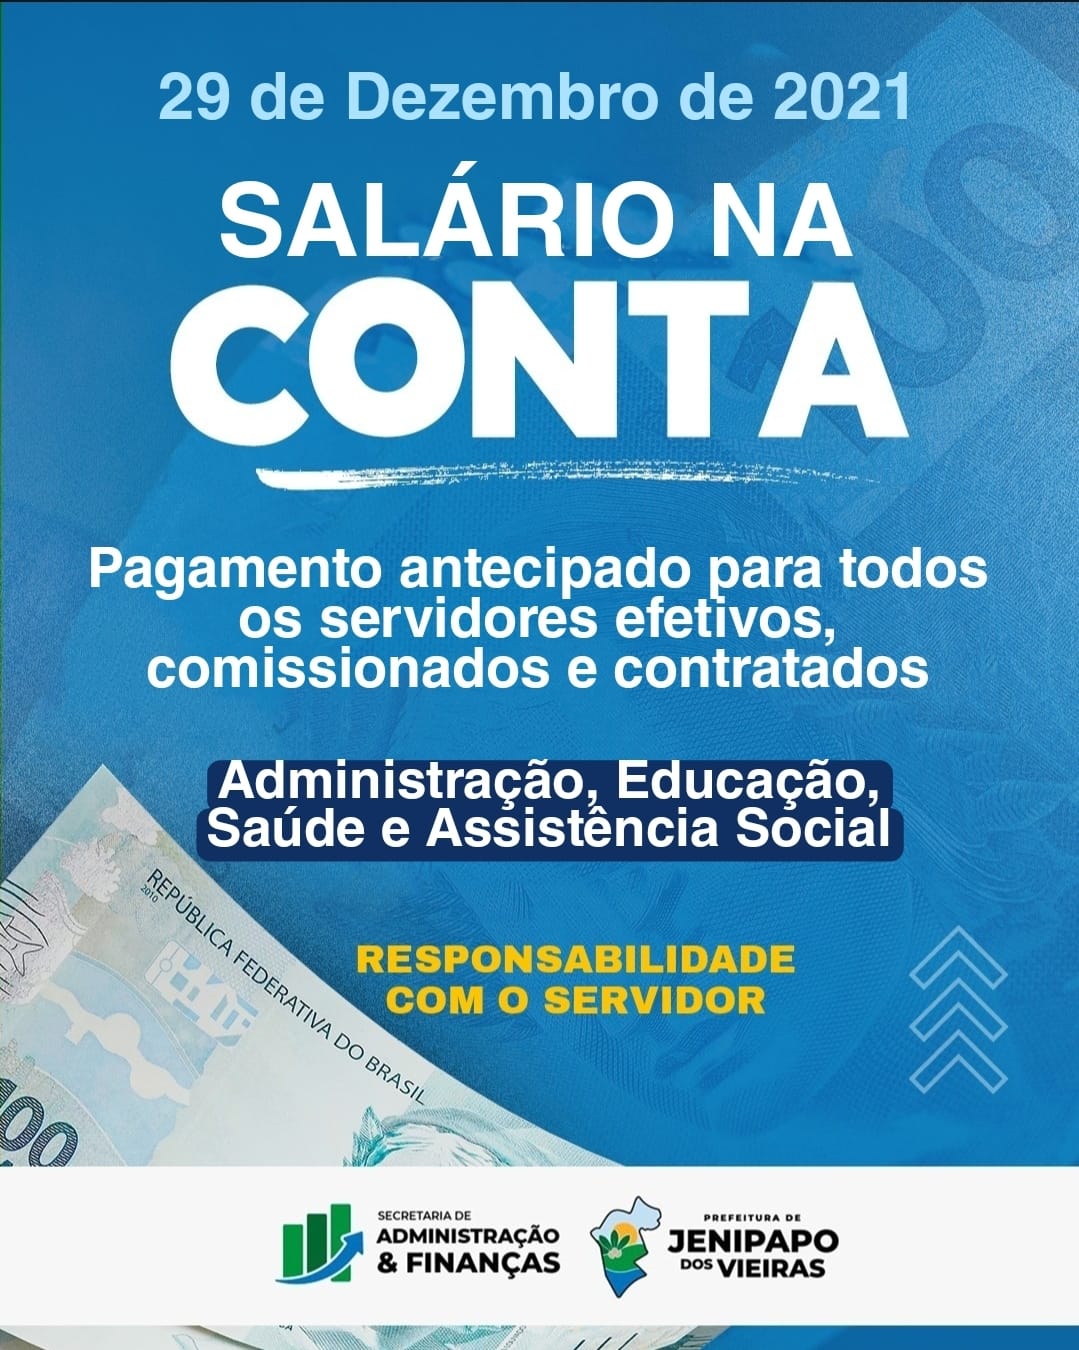 29/12: Prefeito Arnóbio efetua o pagamento dos salários de todos os servidores em Jenipapo dos Vieiras